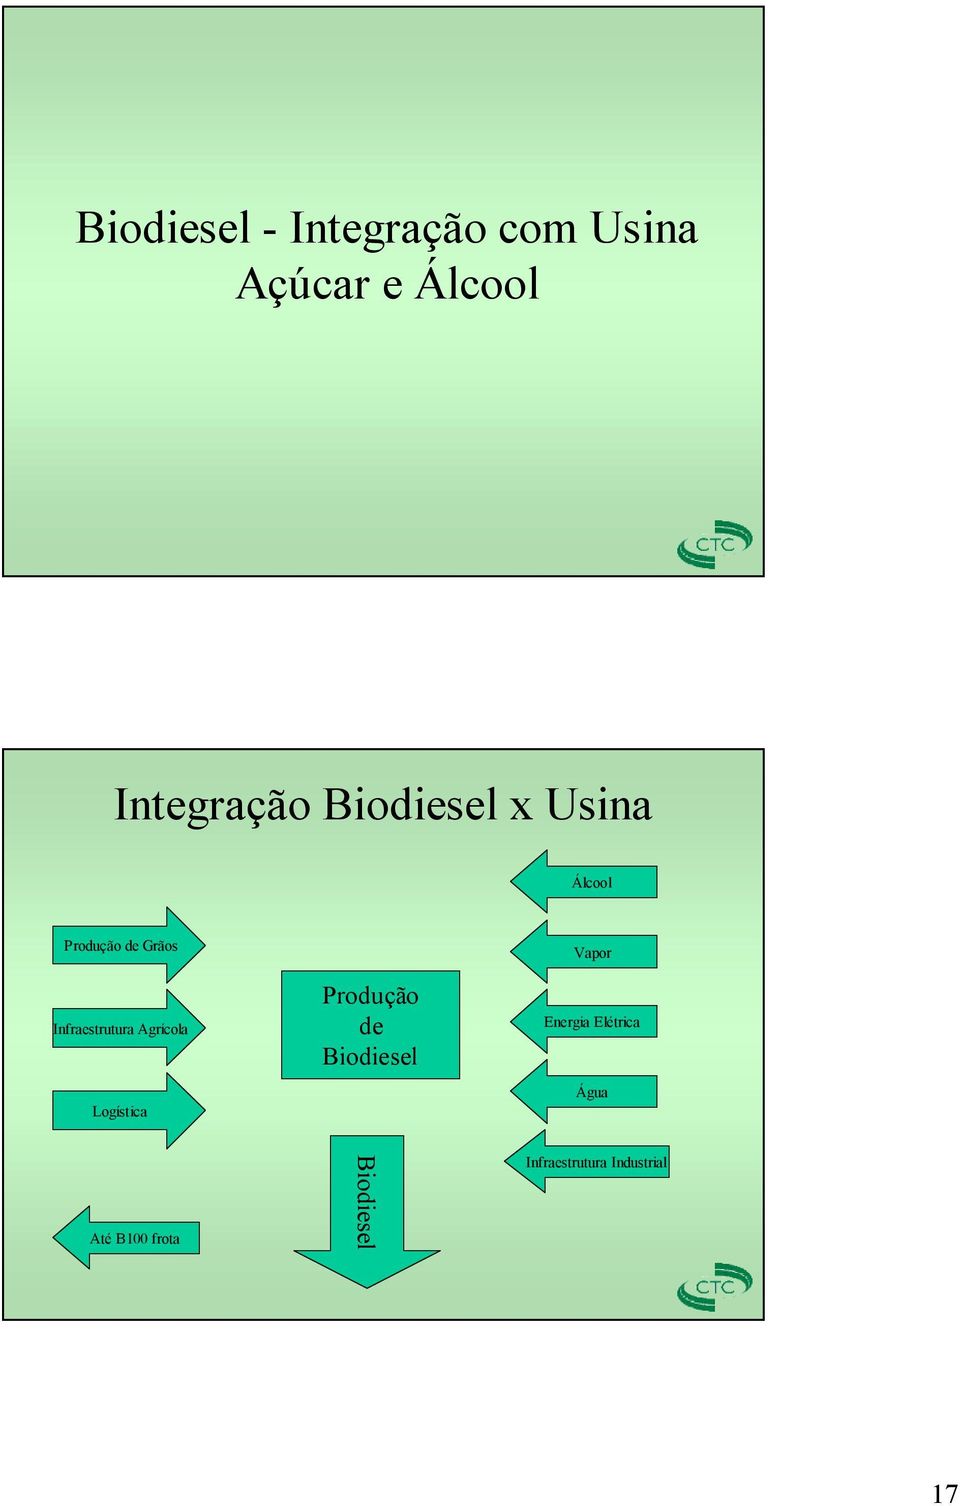 Agrícola Logística Produção de Biodiesel Vapor Energia